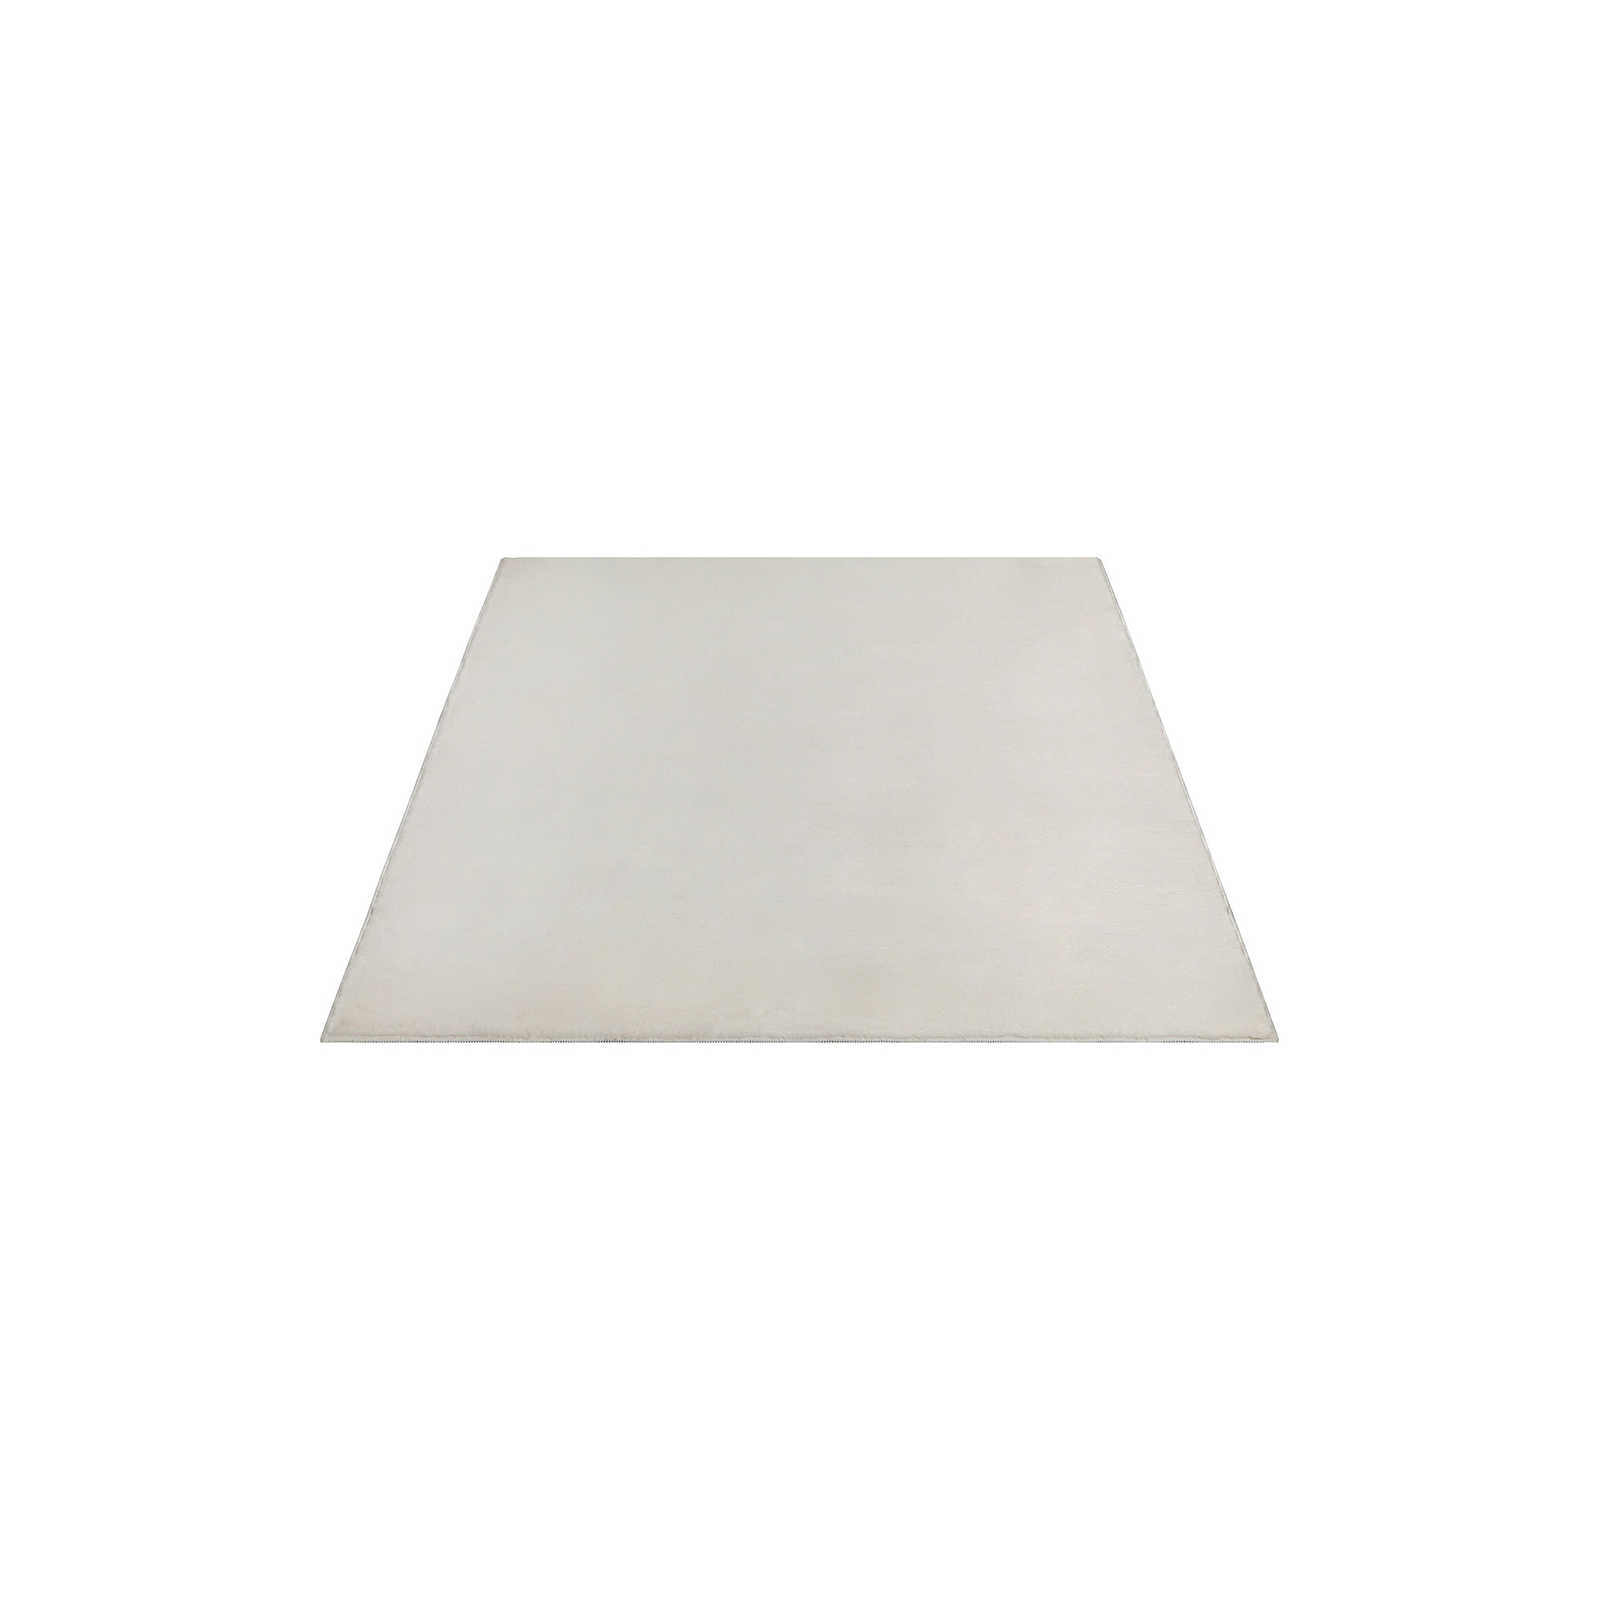 Soft pile carpet in cream - 200 x 140 cm
